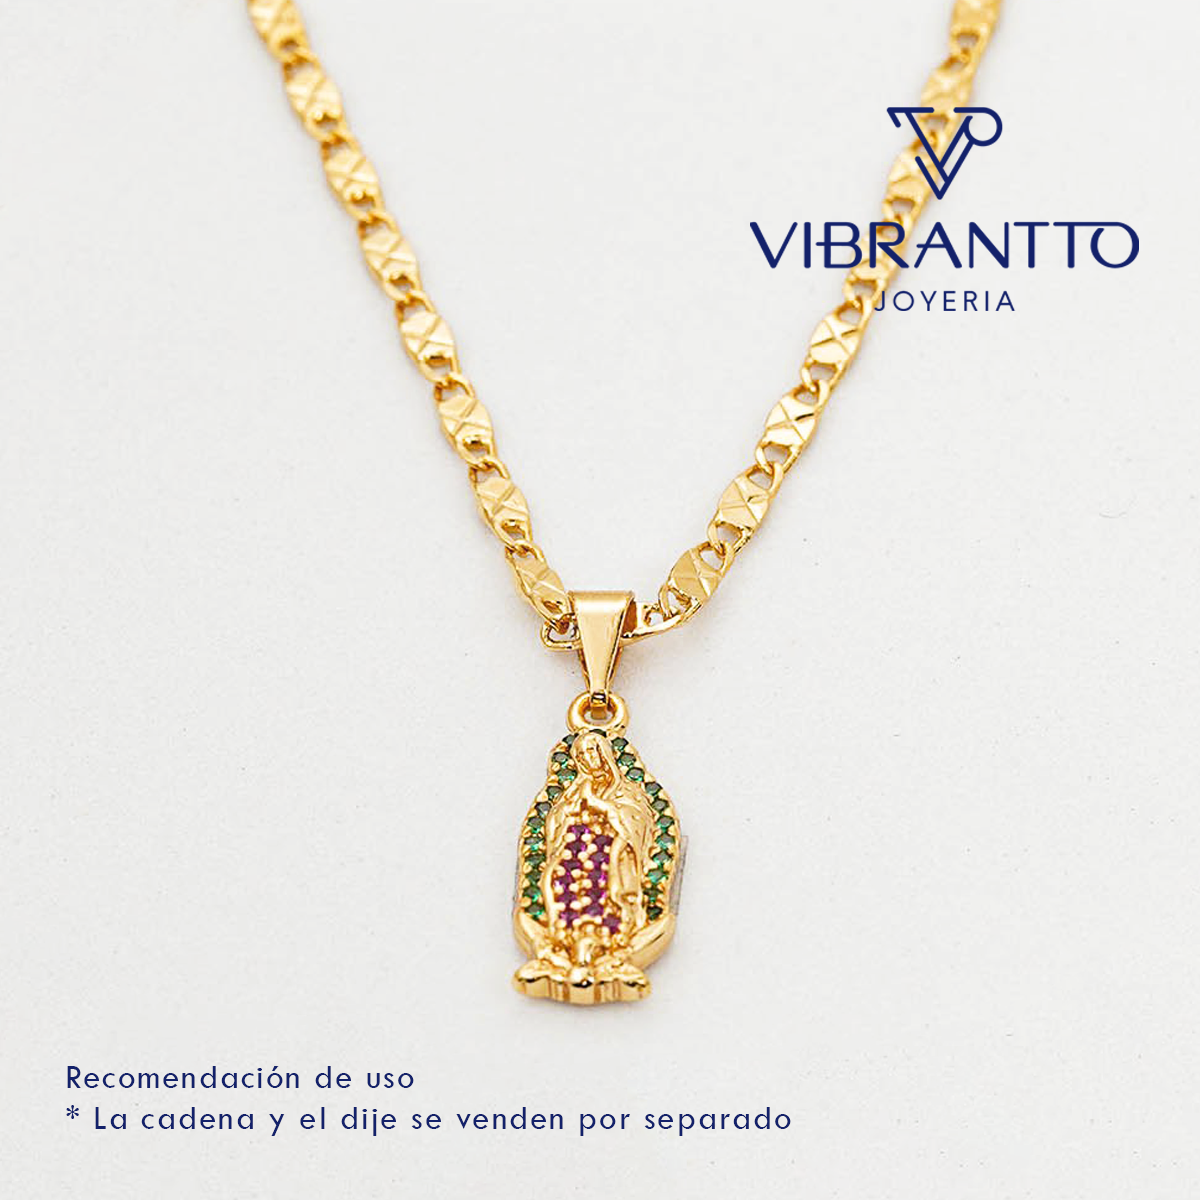 Dije Virgen de Guadalupe colores 3. Oro Laminado 18k - Vibrantto.com - Colombia